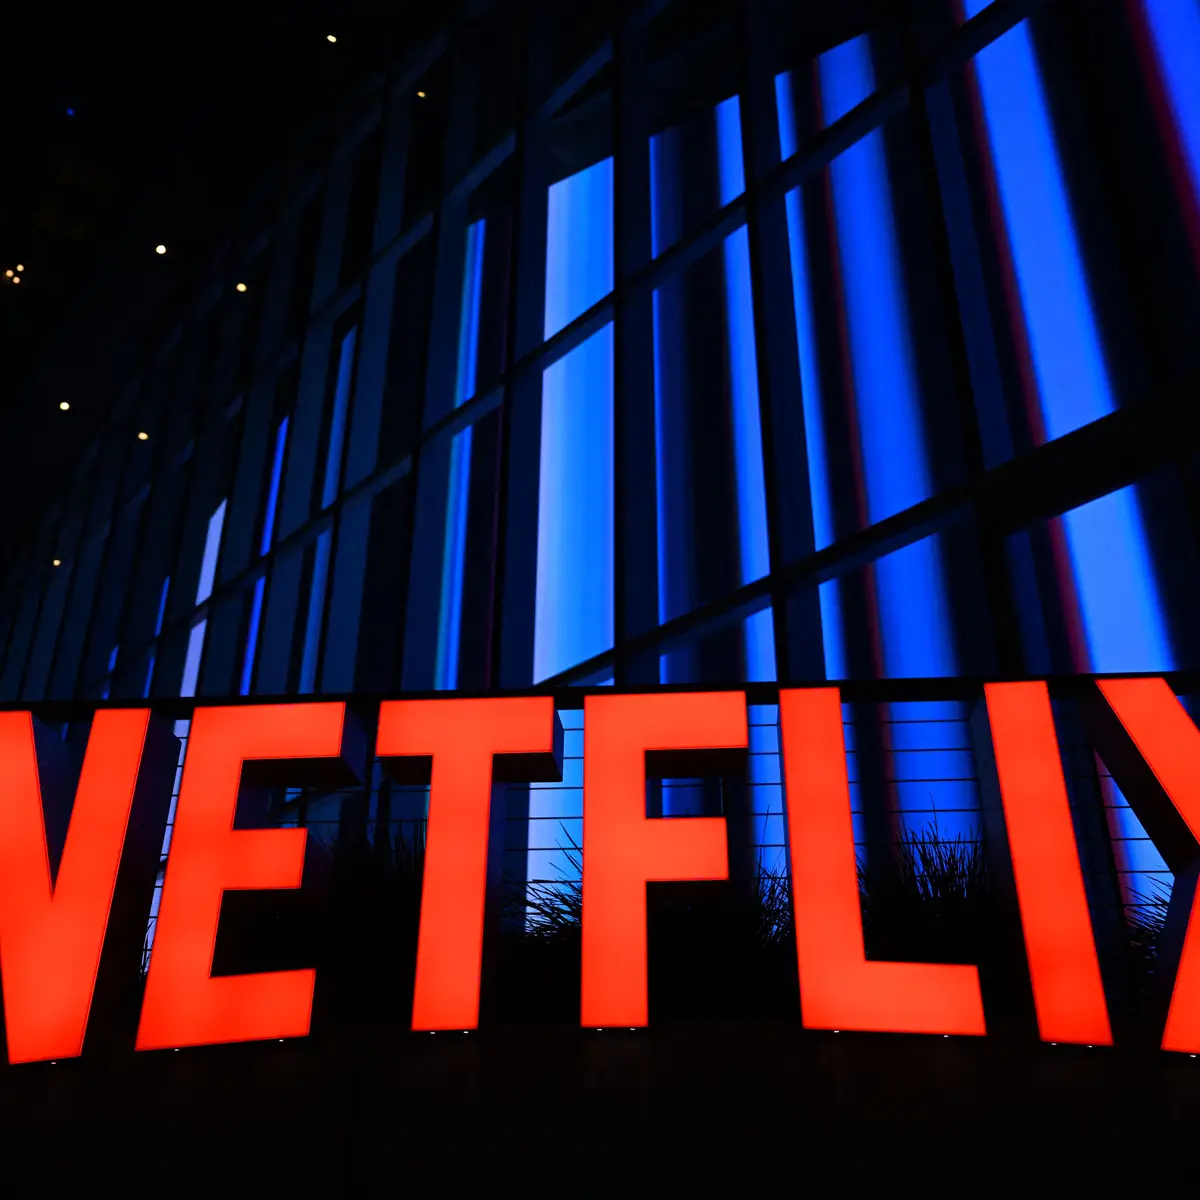 Netflix prepara-se para acabar com a partilha de contas, Tecnologia